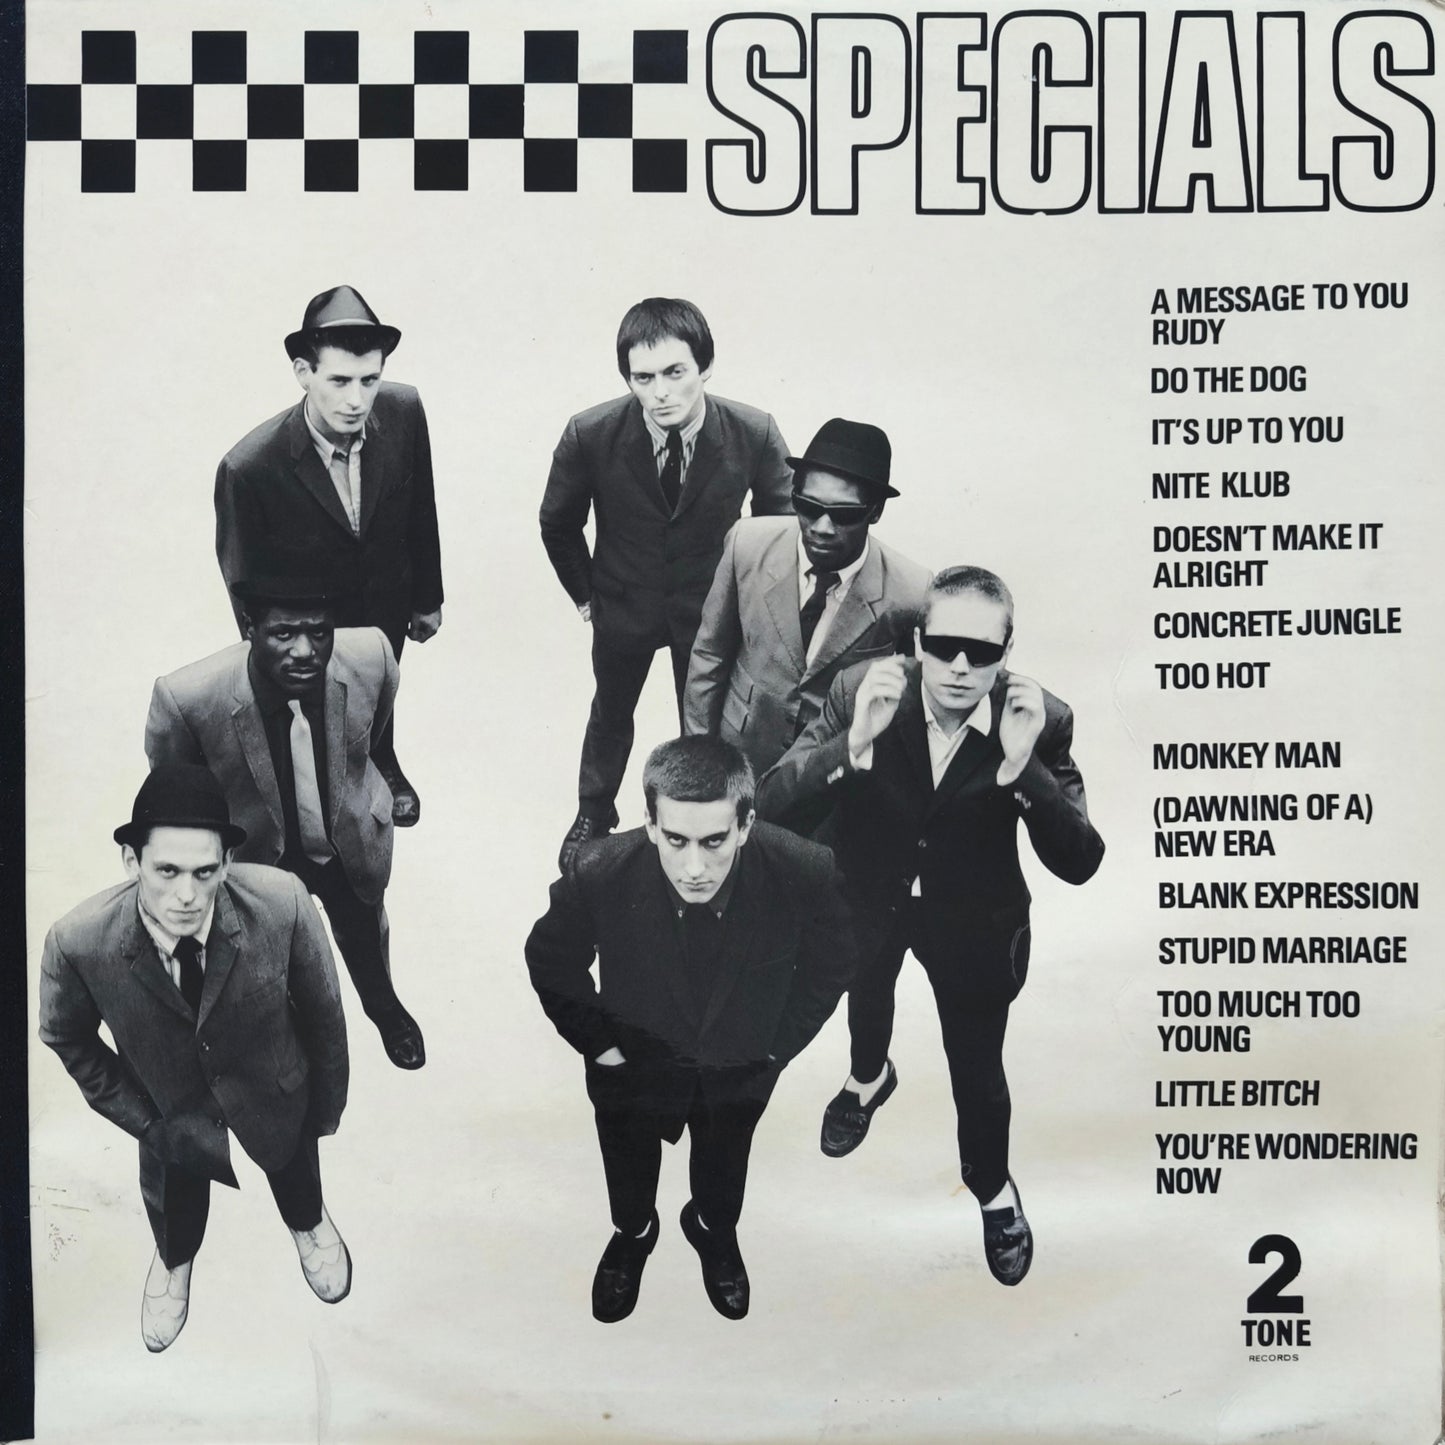 SPECIALS - Specials (pressage UK)